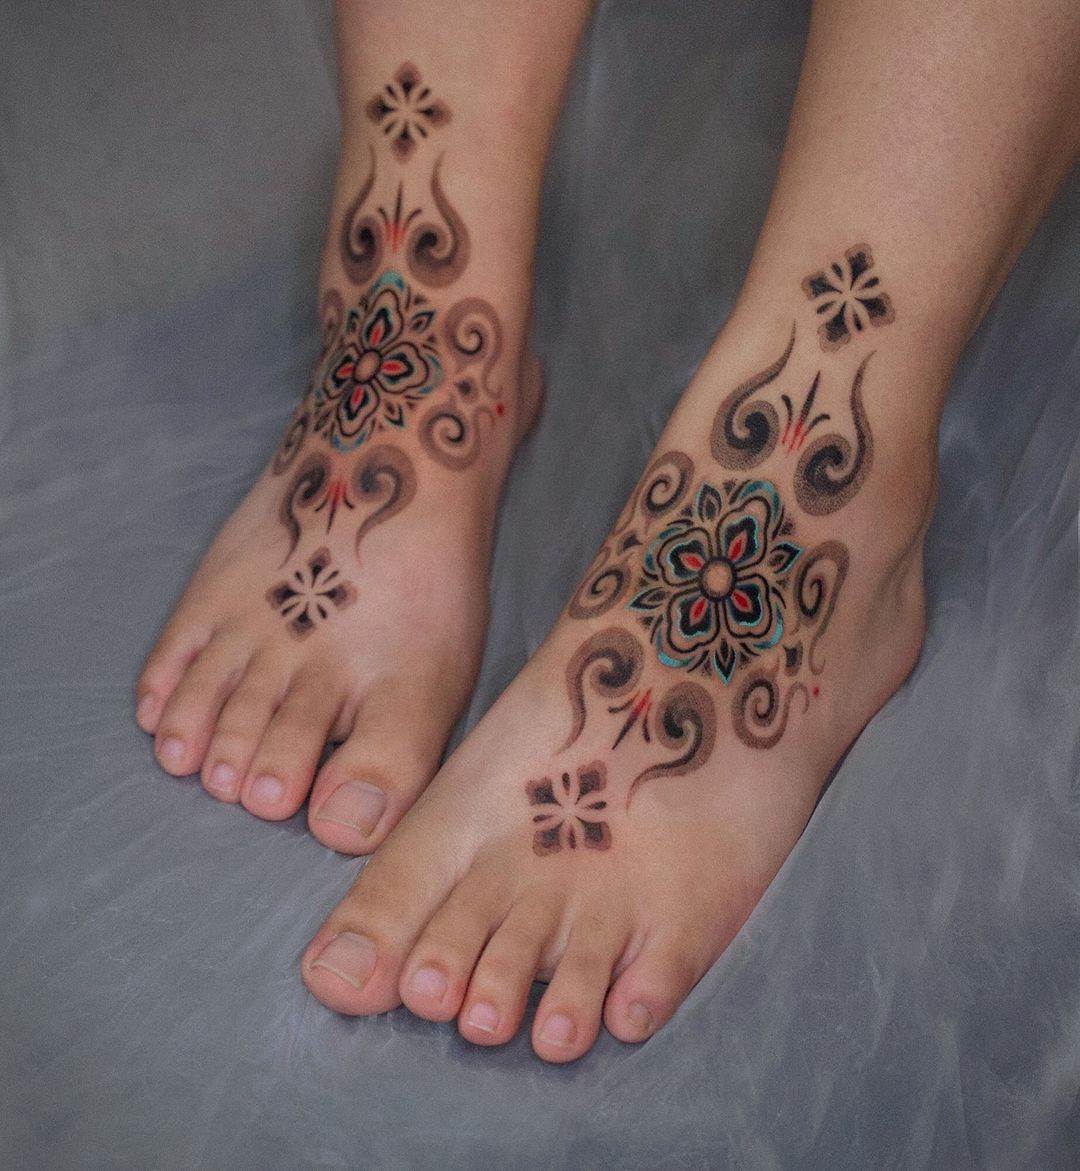 Infant footprint with wings tattoo idea | TattoosAI